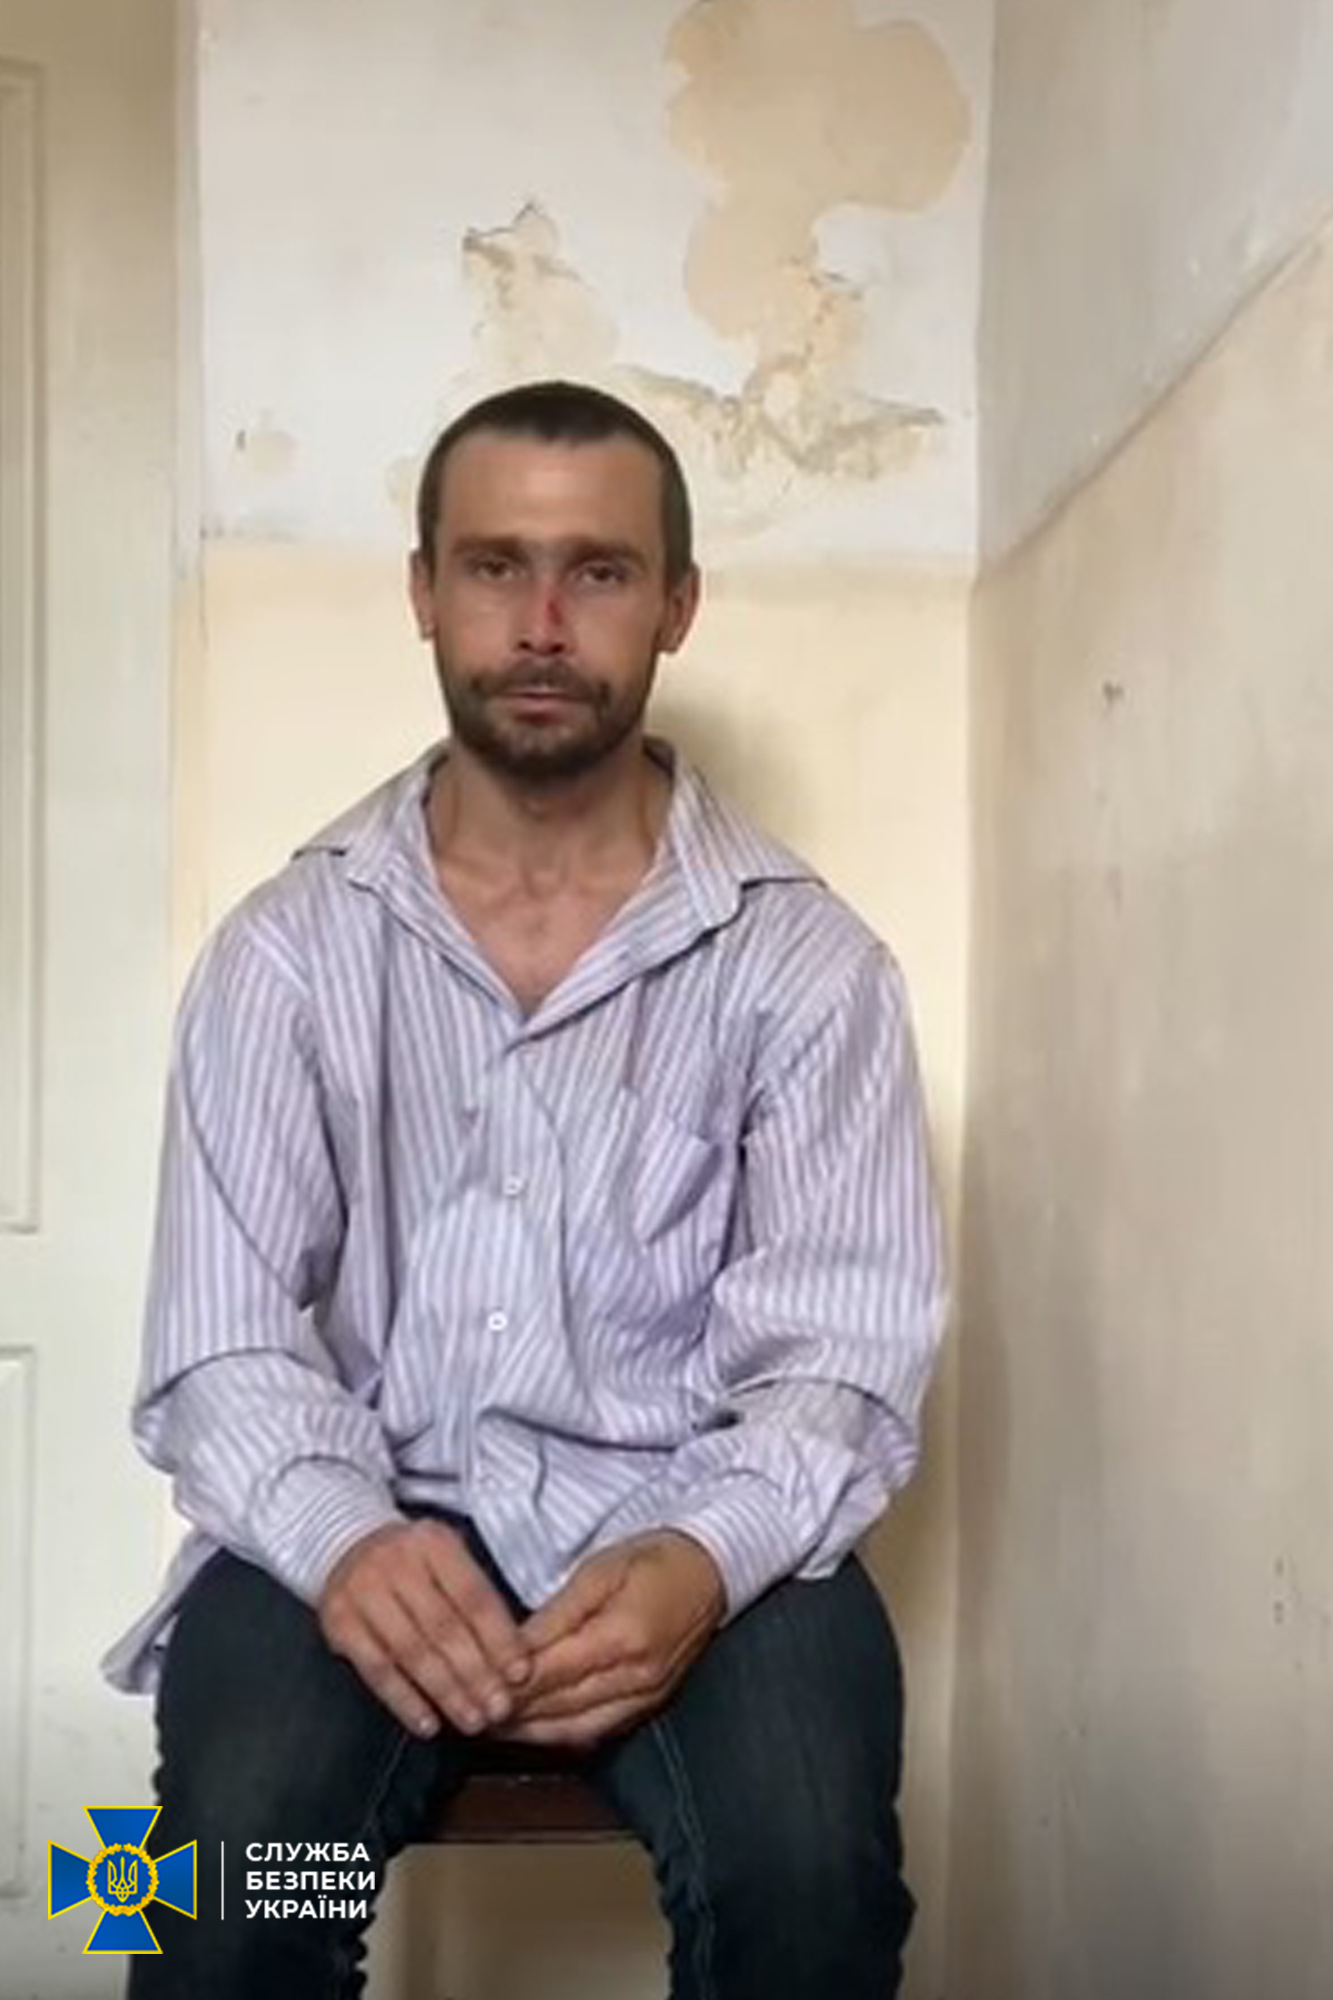 Десять лет тюрьмы получил житель Краматорска, воевавший на стороне т.н. “ДНР” 1